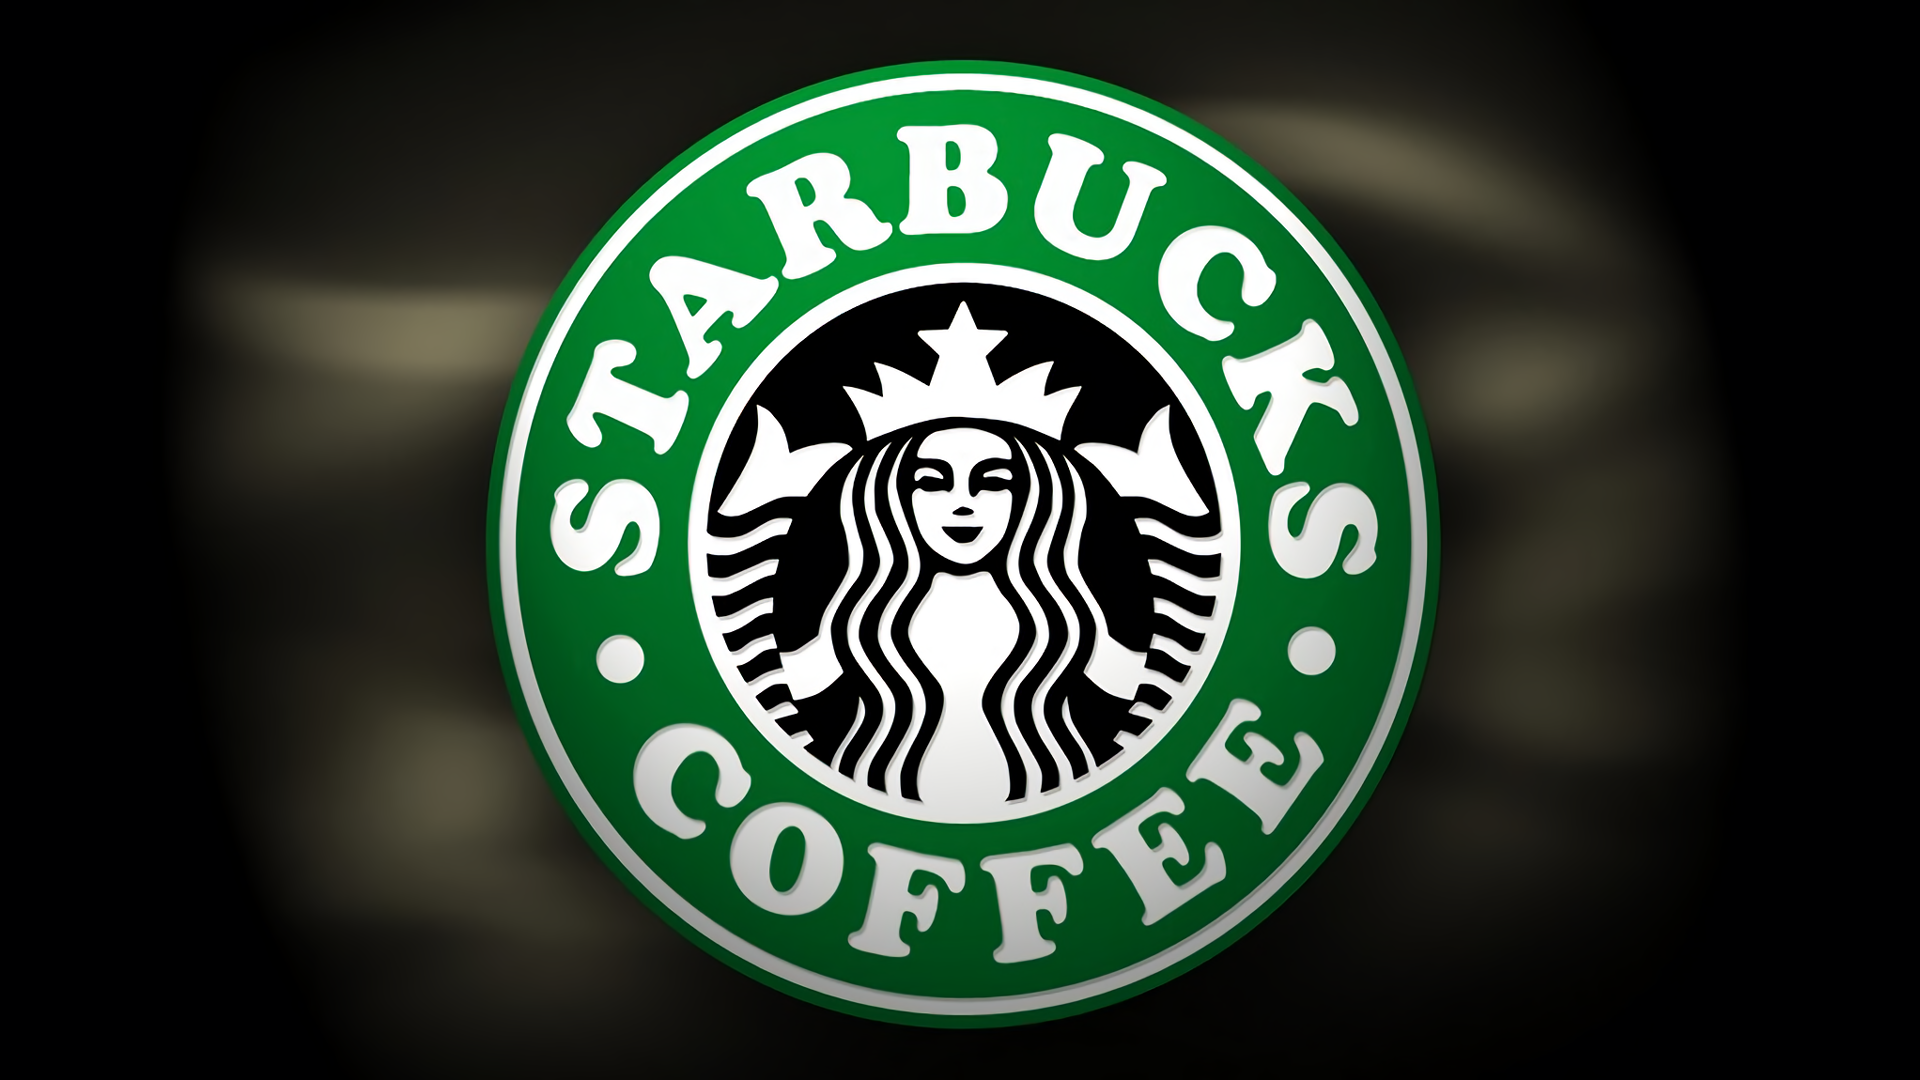 Starbucks Wallpapers: Download HD gratuito [500+ HQ]